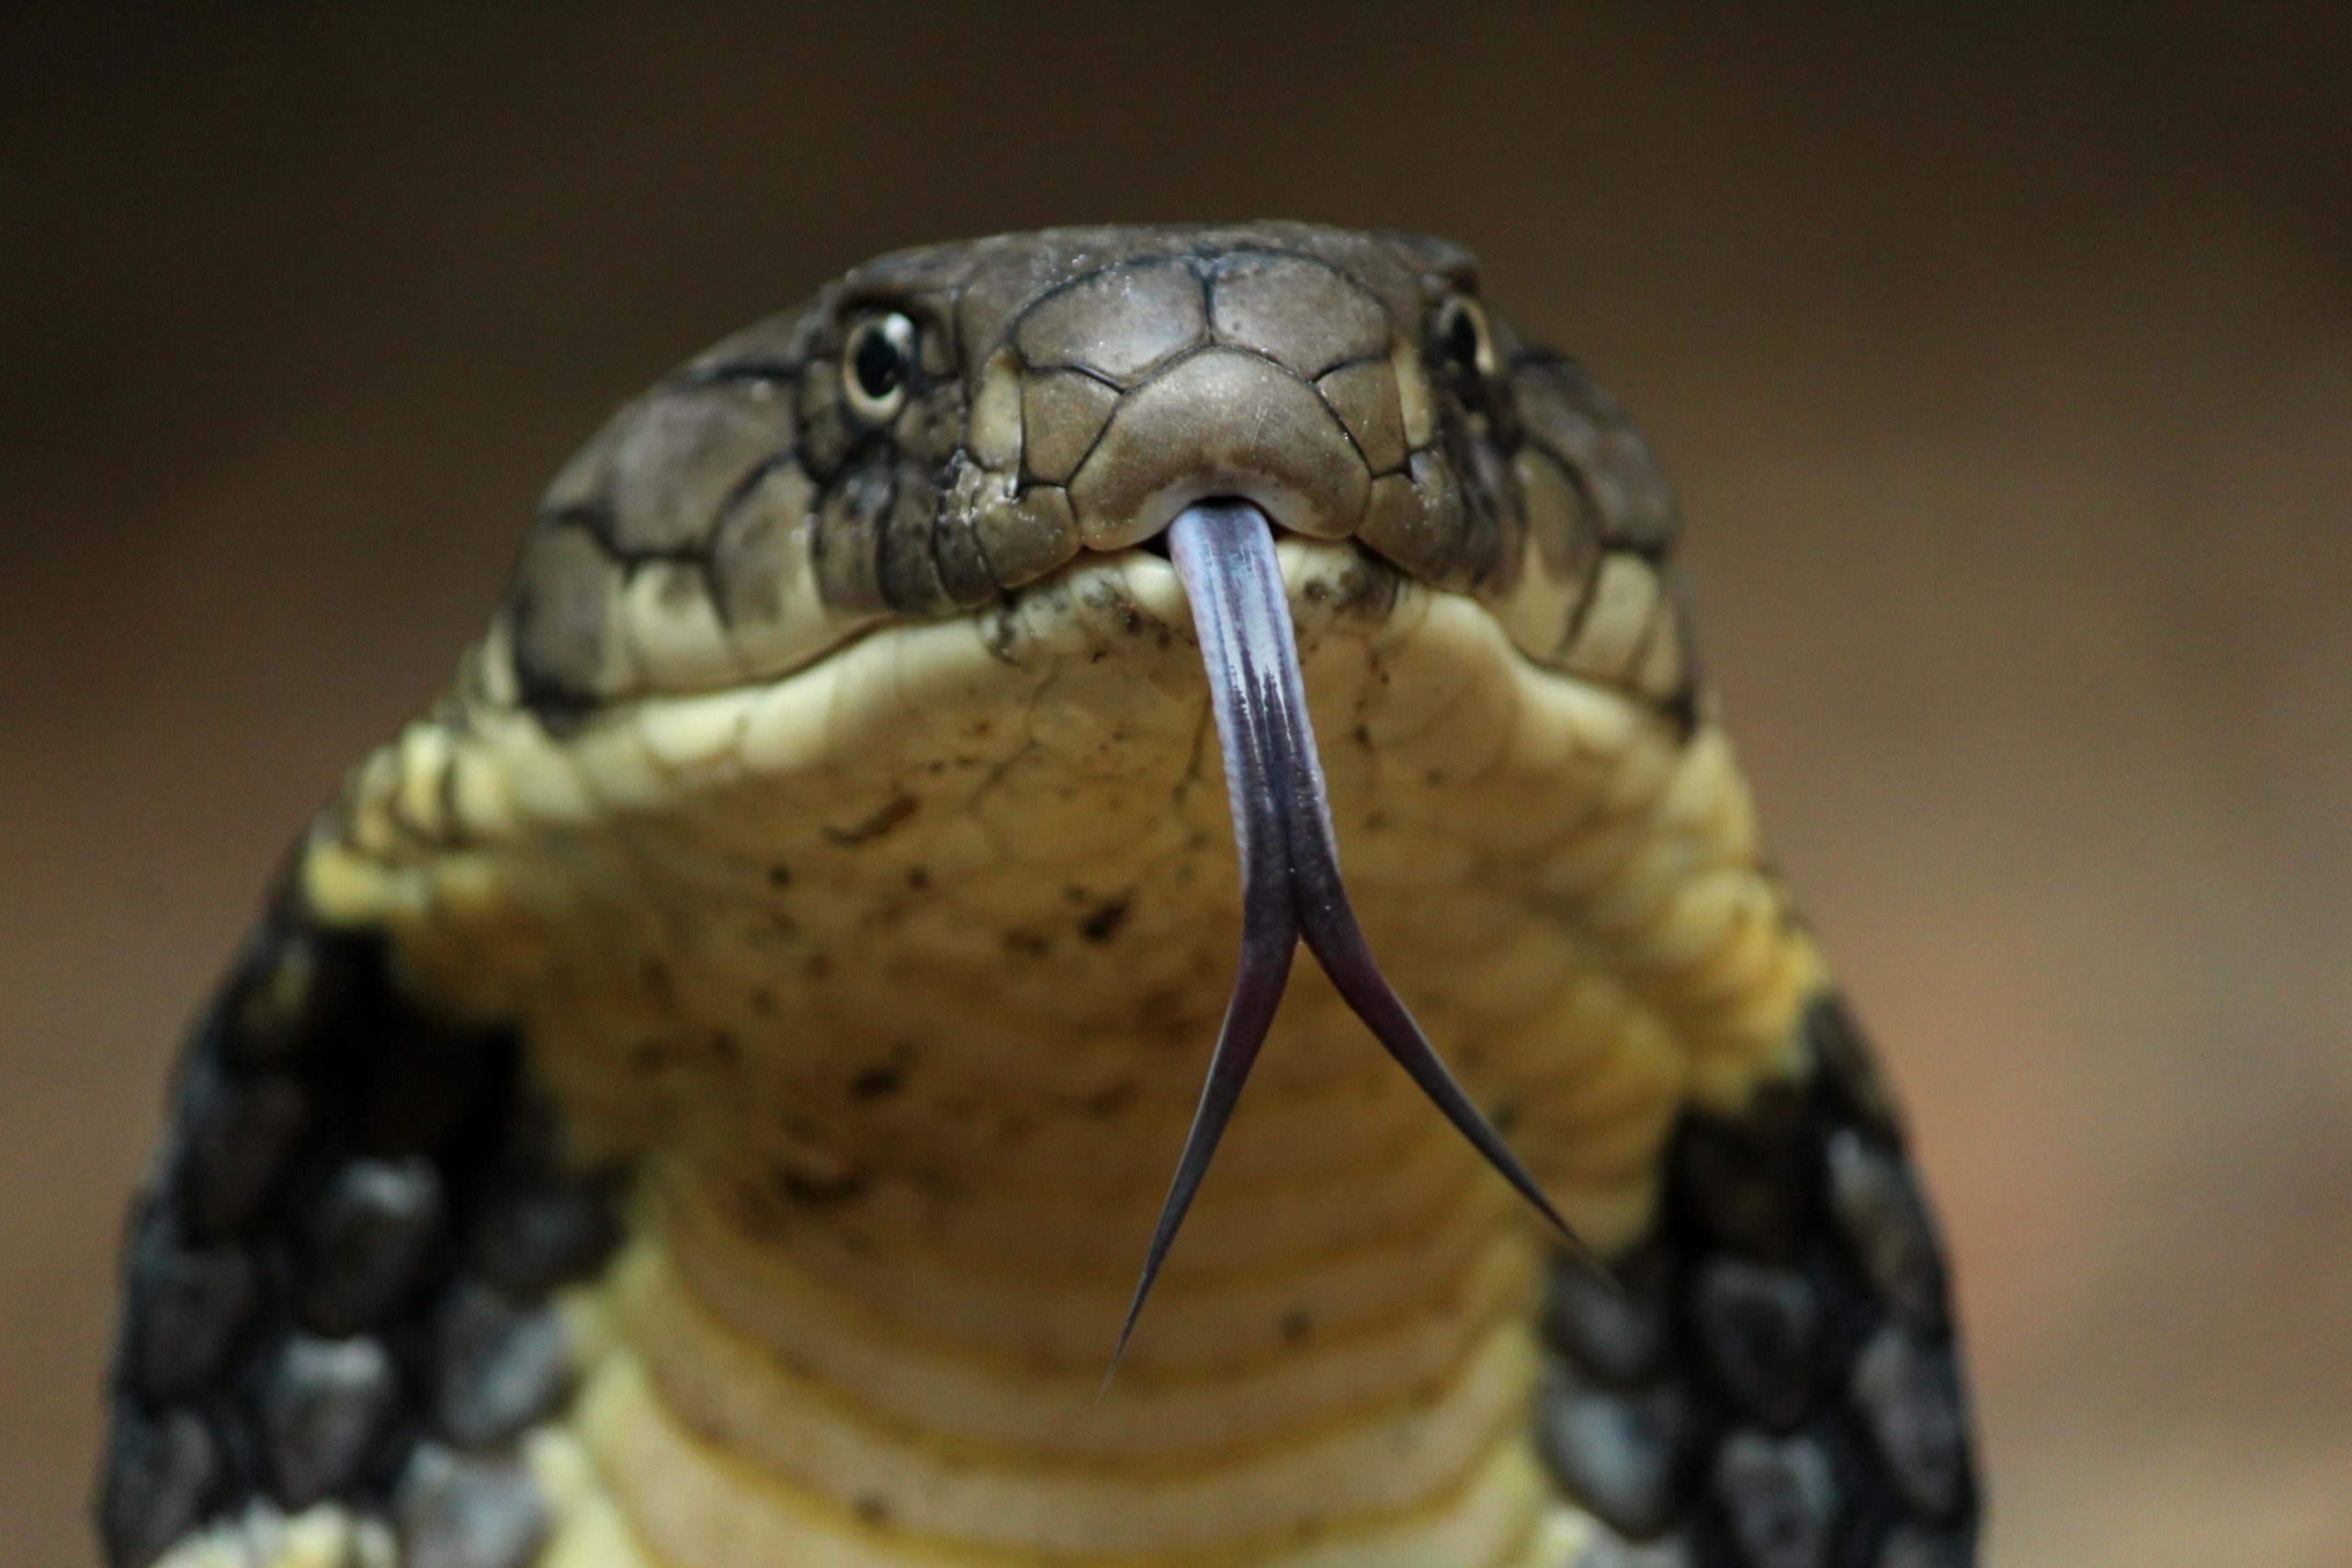 ular king cobra, king cobra